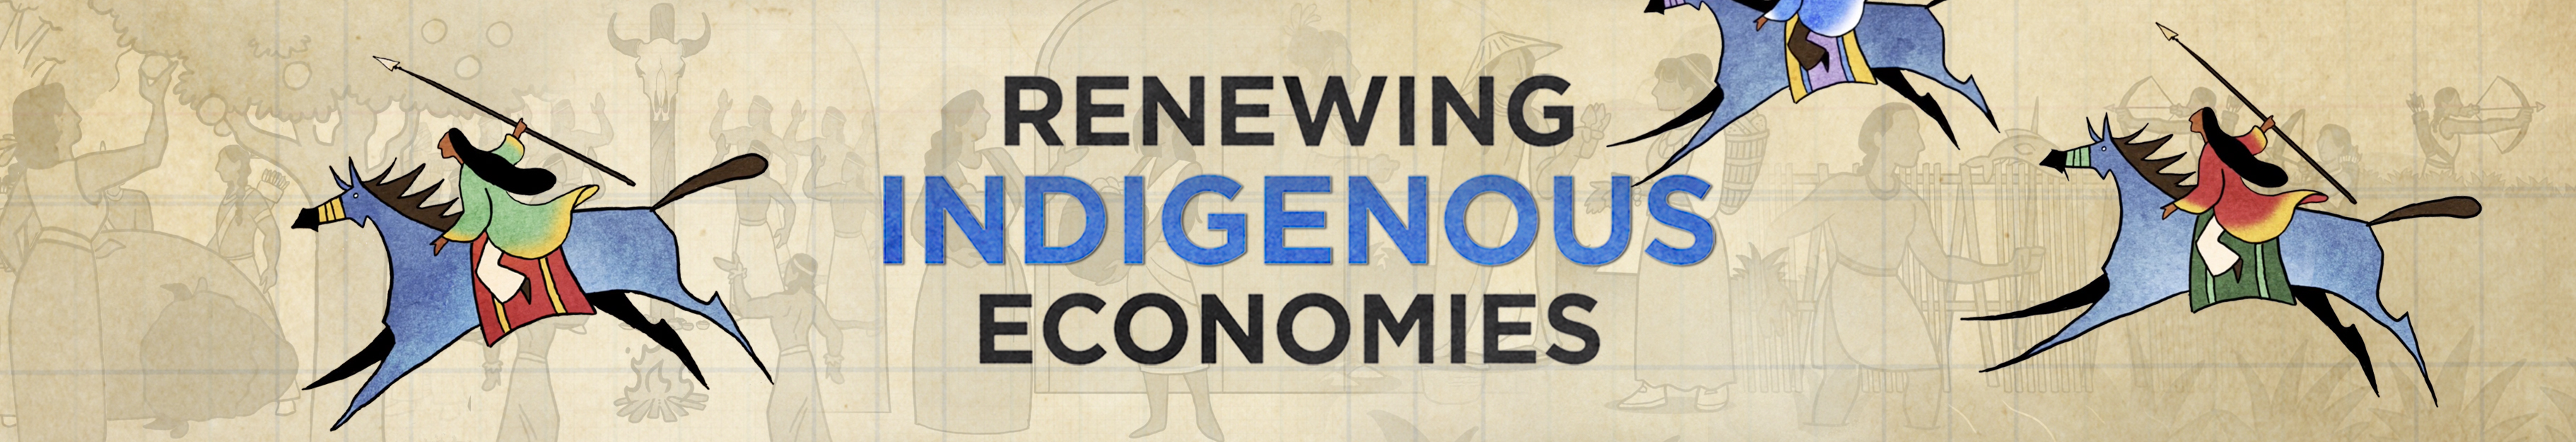 indigenous-economies-banner1.jpg